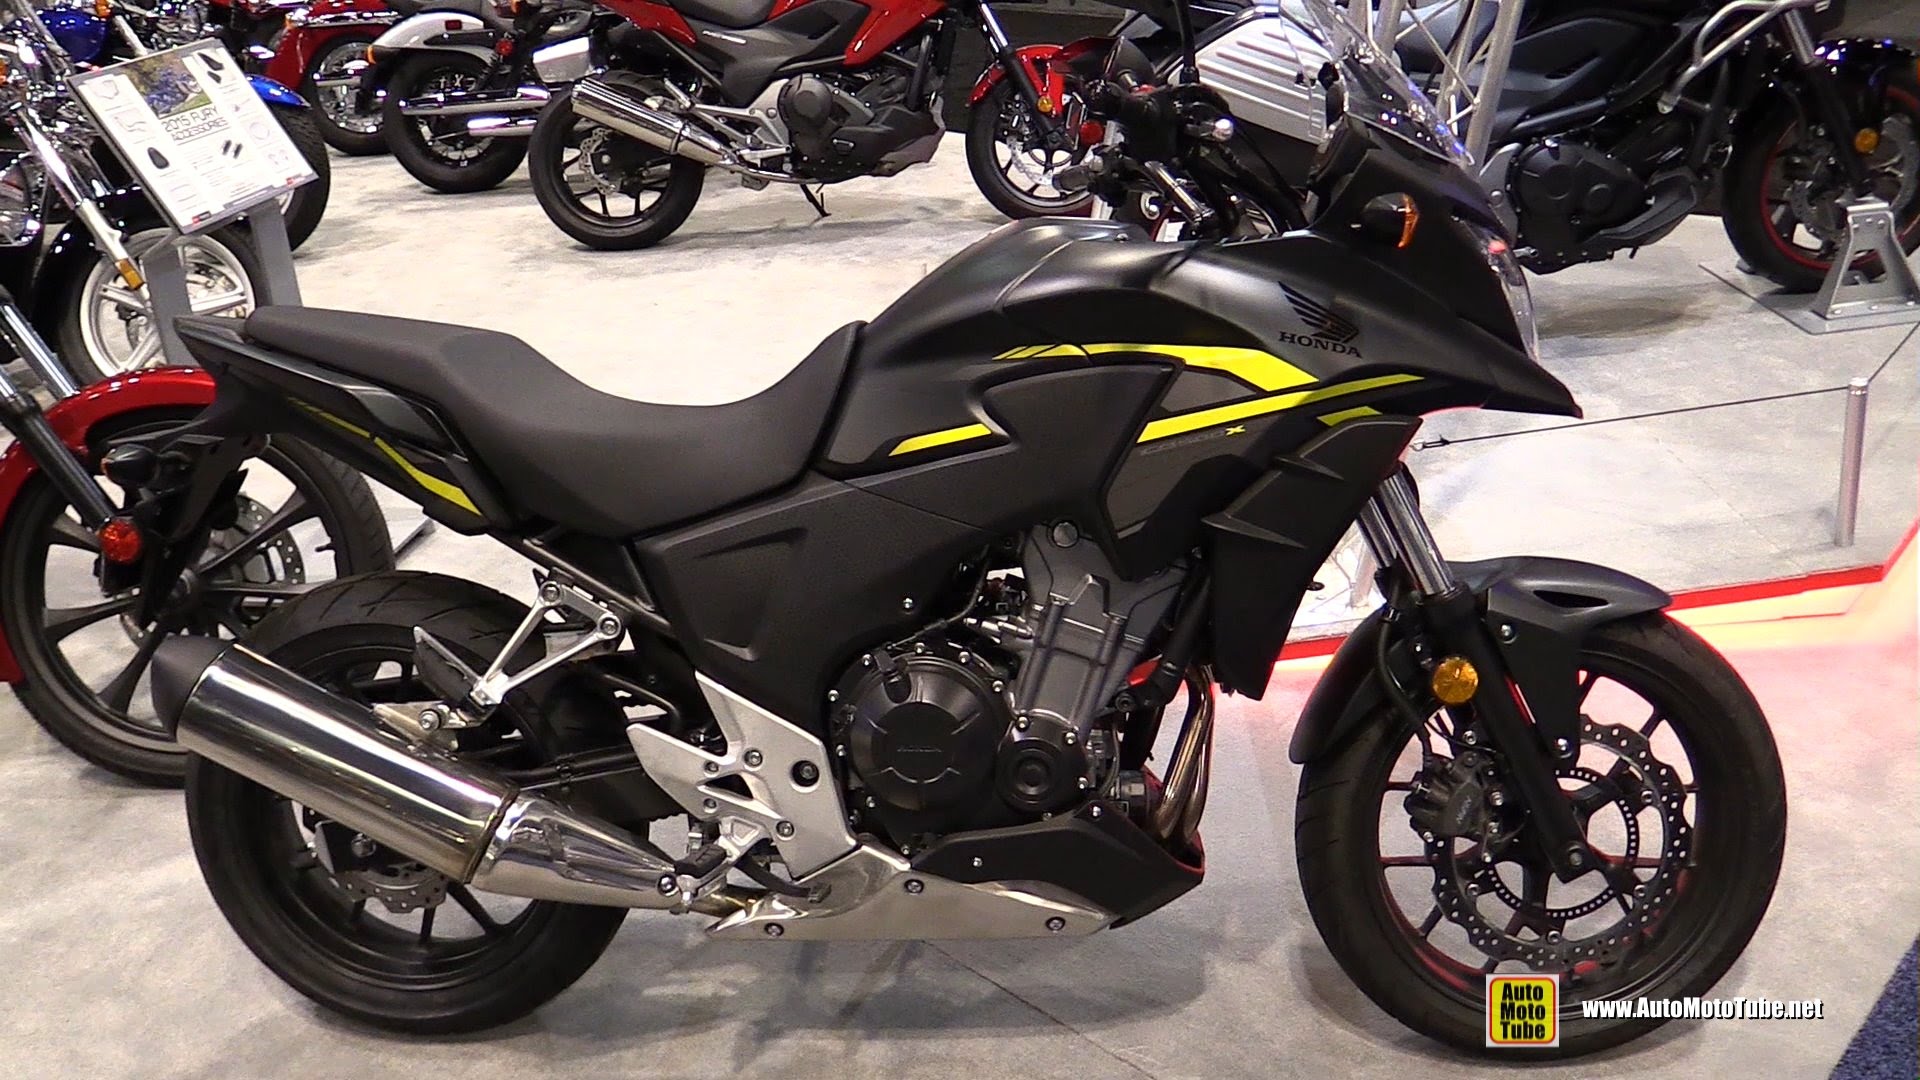 2015 Honda CB 500X ABS pic 7   onlymotorbikescom